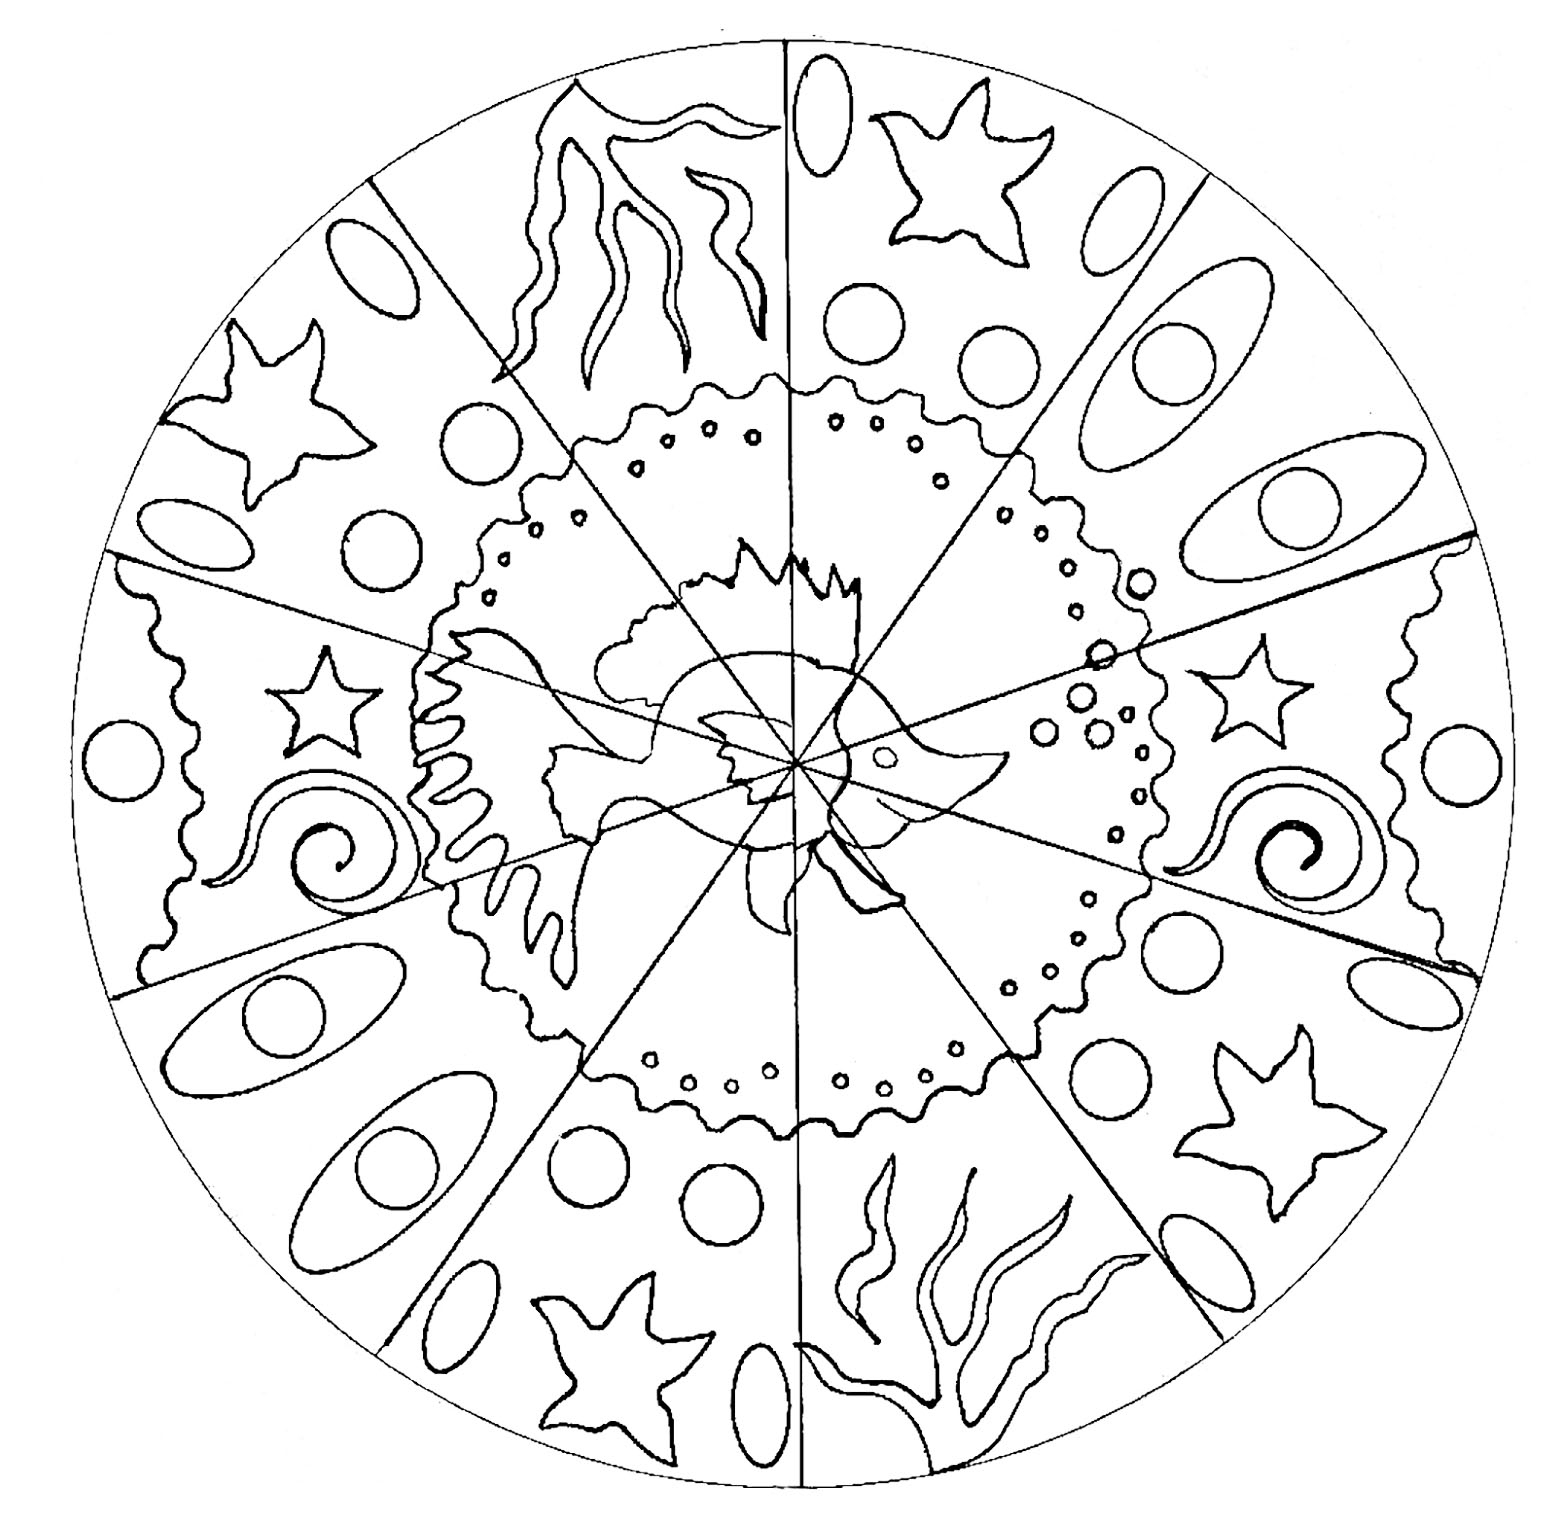 Mandala Poisson - Coloriage Mandalas - Coloriages Pour Enfants intérieur Coloriages Mandalas 